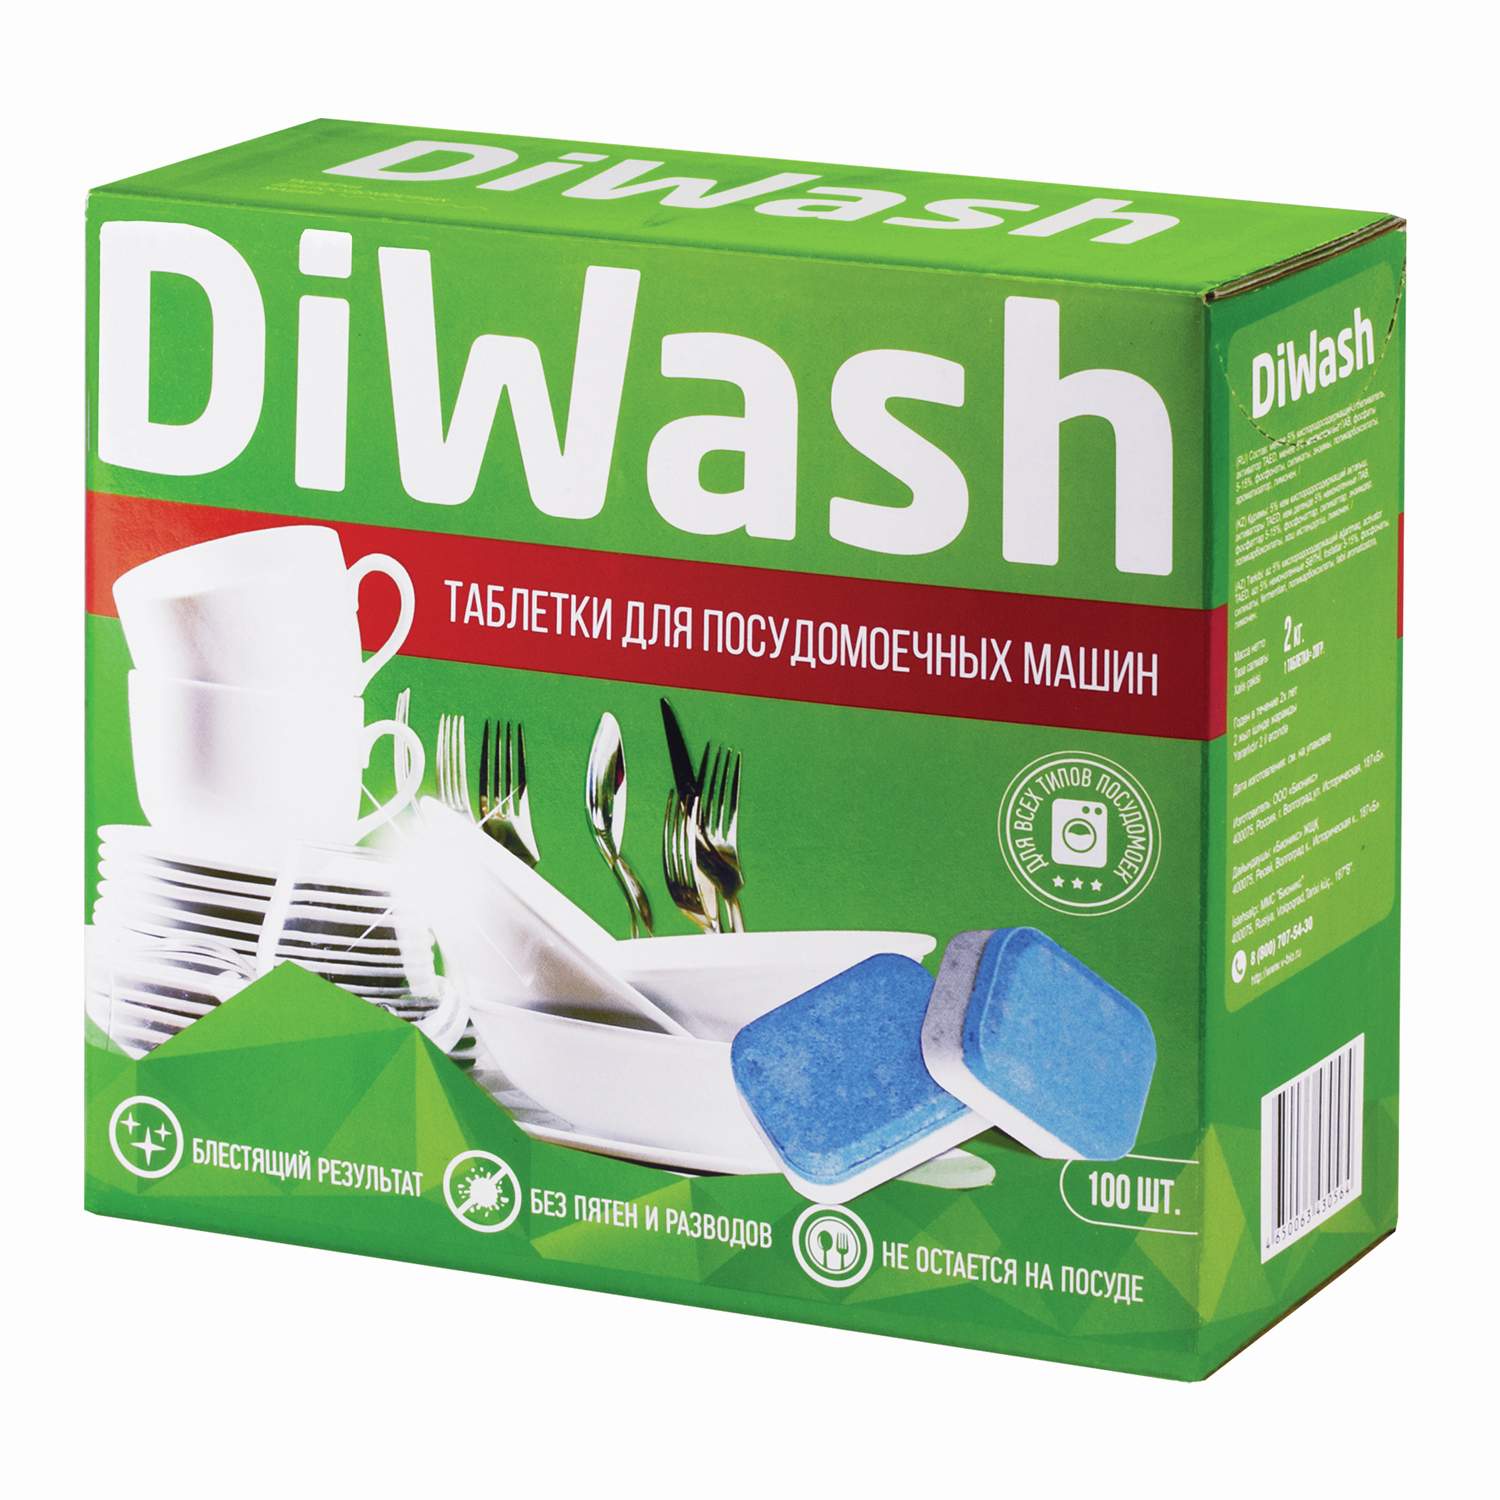 Таблетки для посудомоечных машин DiWash 100 шт. - купить в Koskomall, цена на Мегамаркет